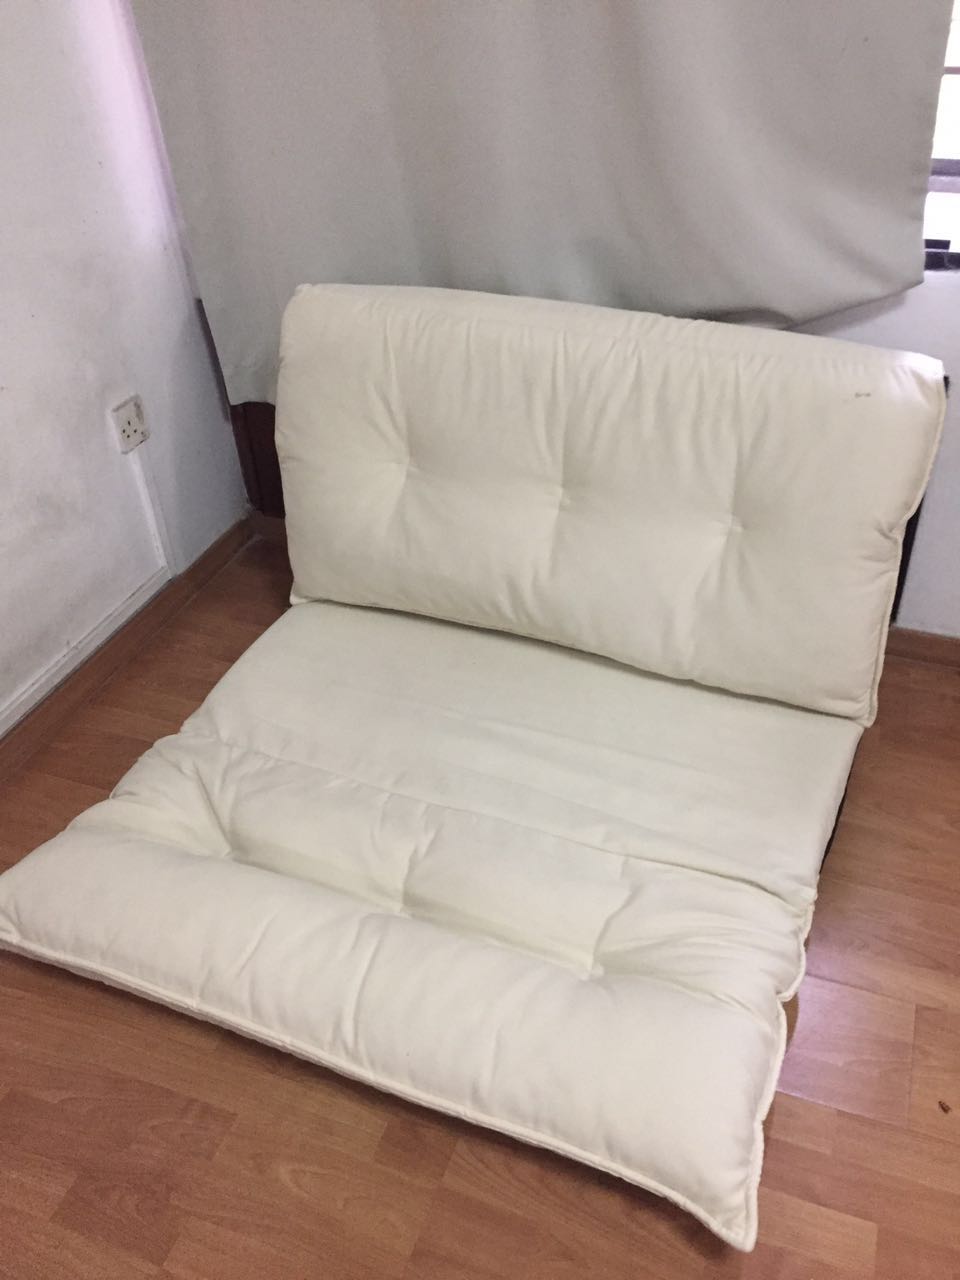 小型沙发床